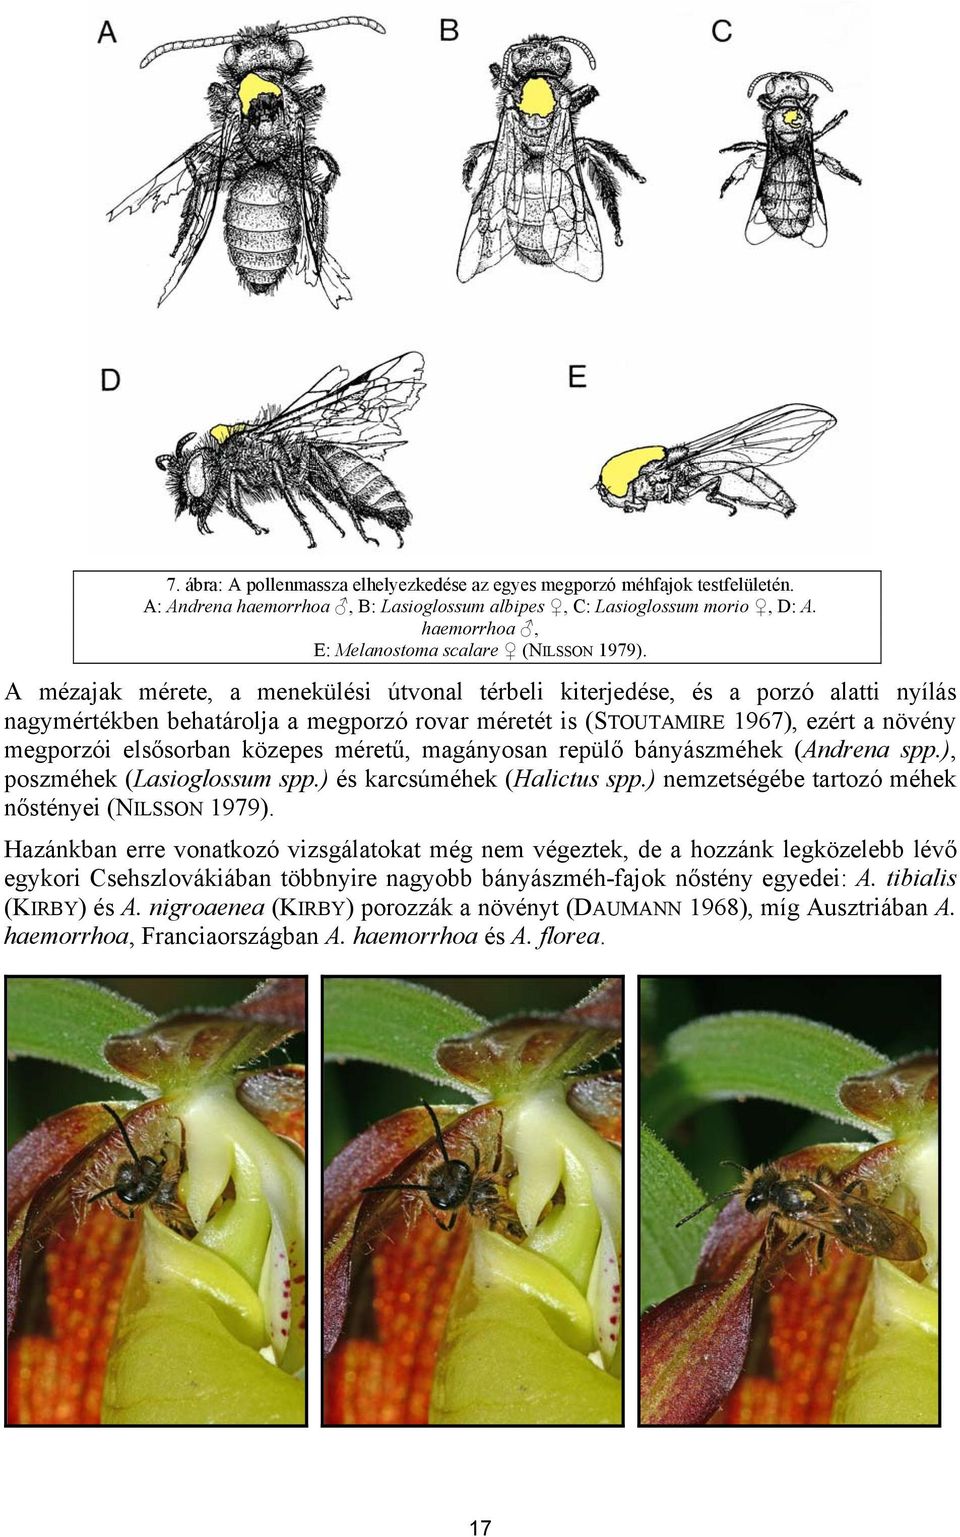 A mézajak mérete, a menekülési útvonal térbeli kiterjedése, és a porzó alatti nyílás nagymértékben behatárolja a megporzó rovar méretét is (STOUTAMIRE 1967), ezért a növény megporzói elsősorban